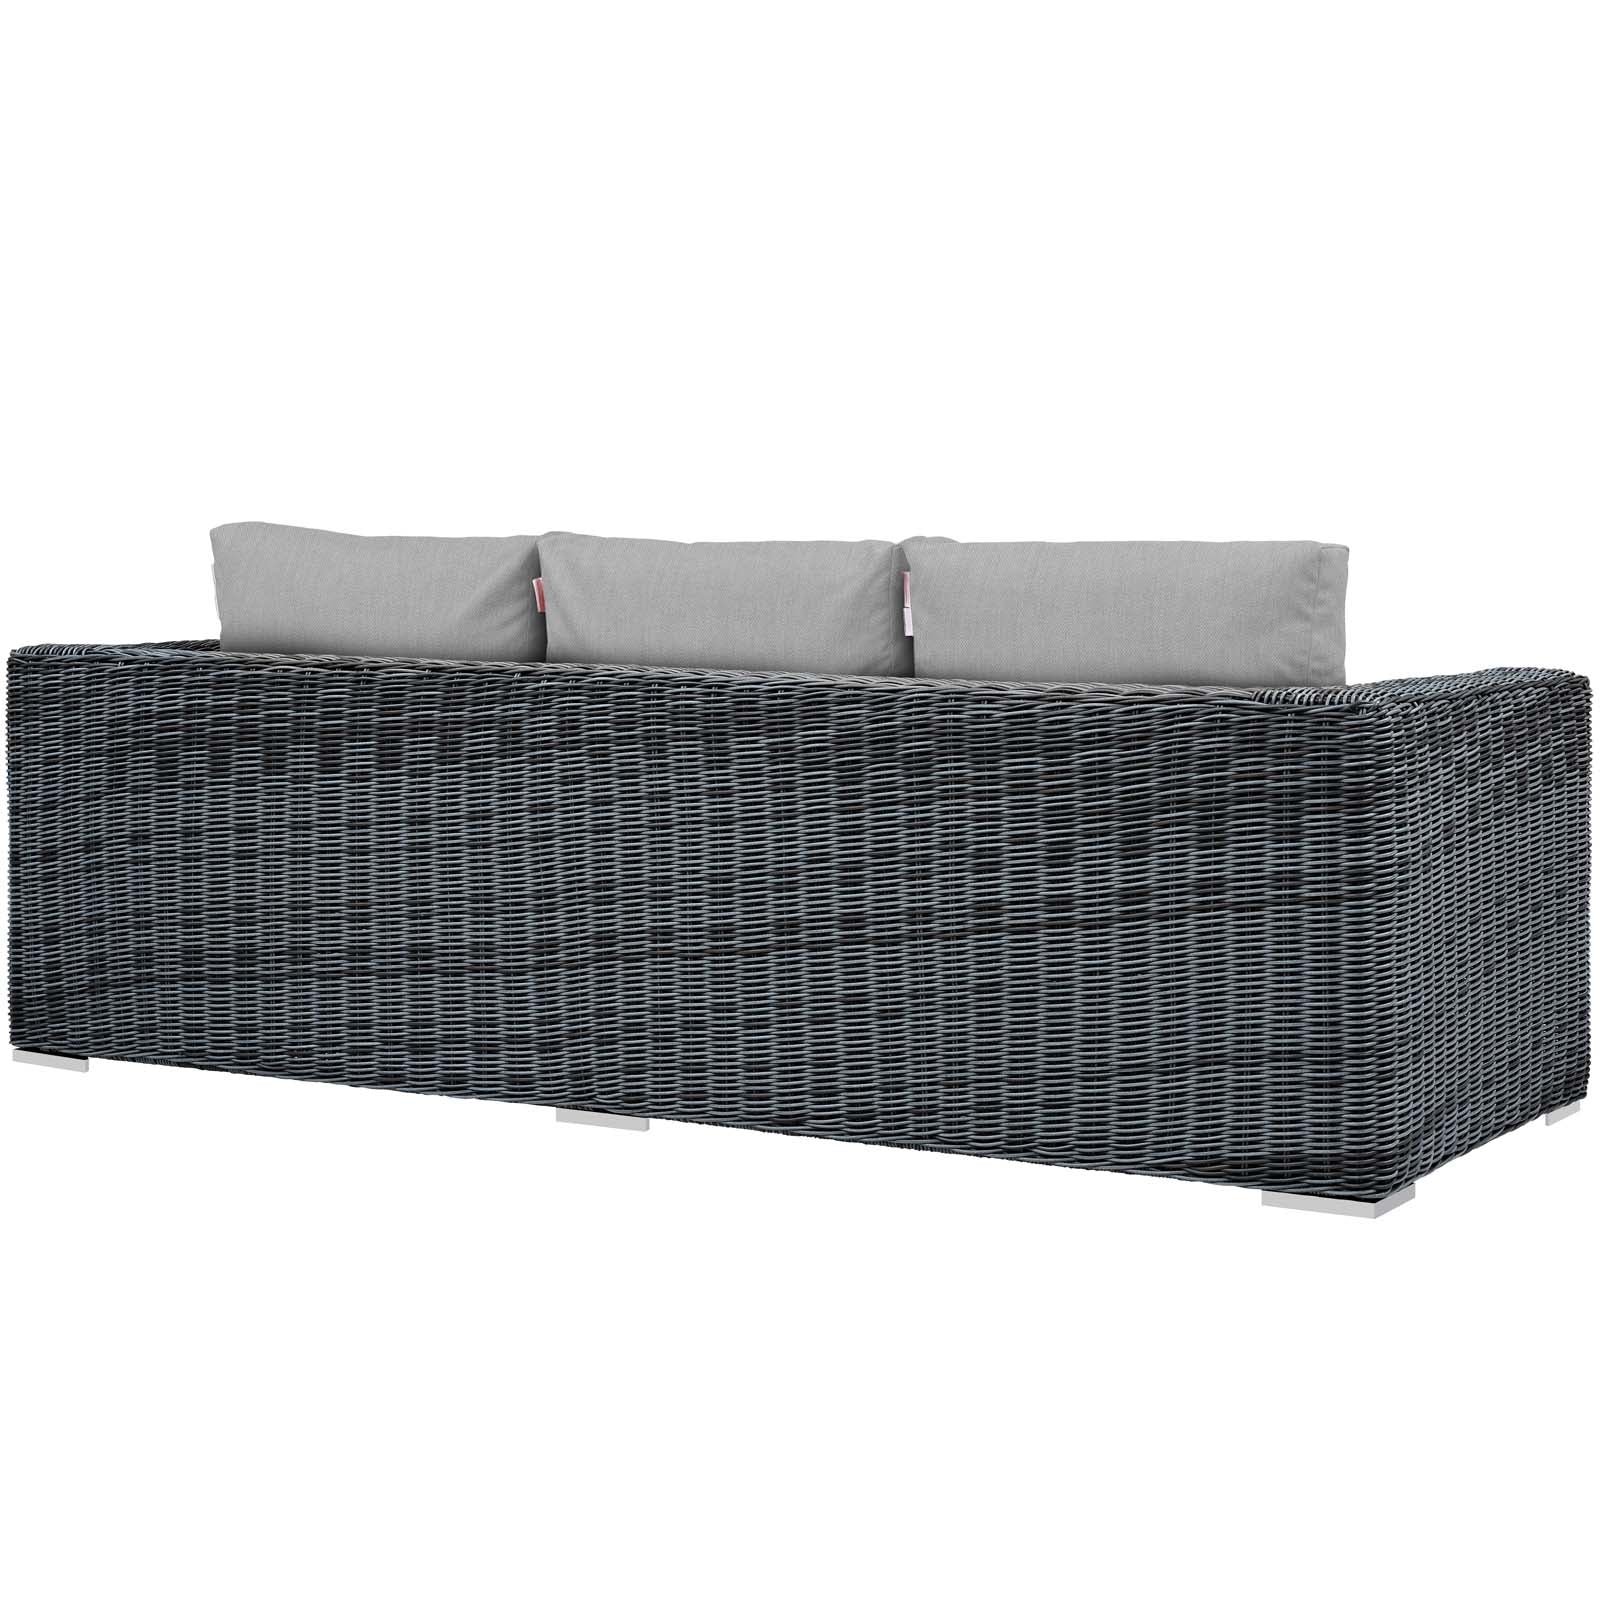 Summon Outdoor Patio Sunbrella® Sofa-Outdoor Sofa-Modway-Wall2Wall Furnishings